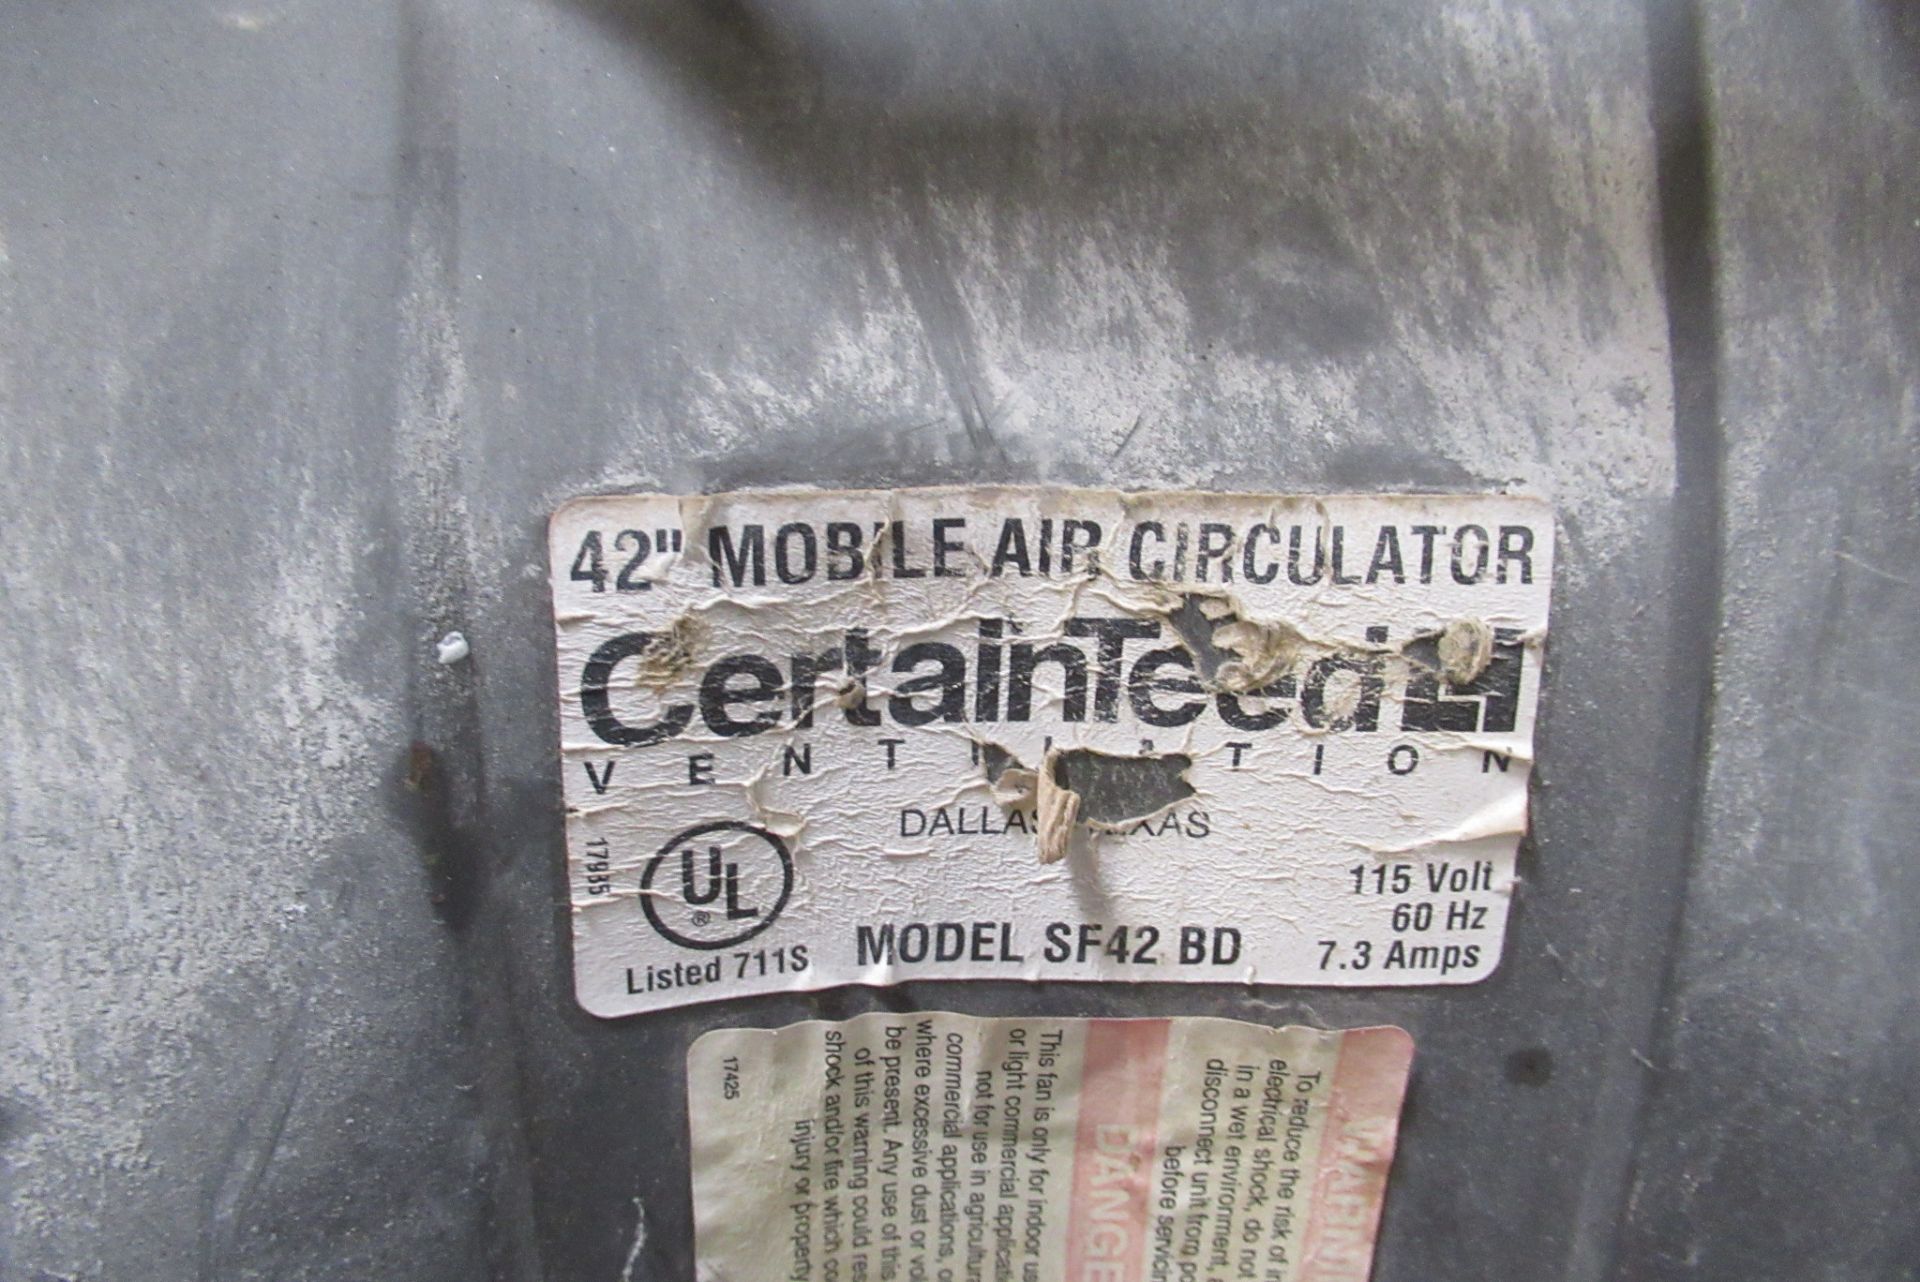 CertainTeed 42" Mobile Air Circulator - Image 2 of 2